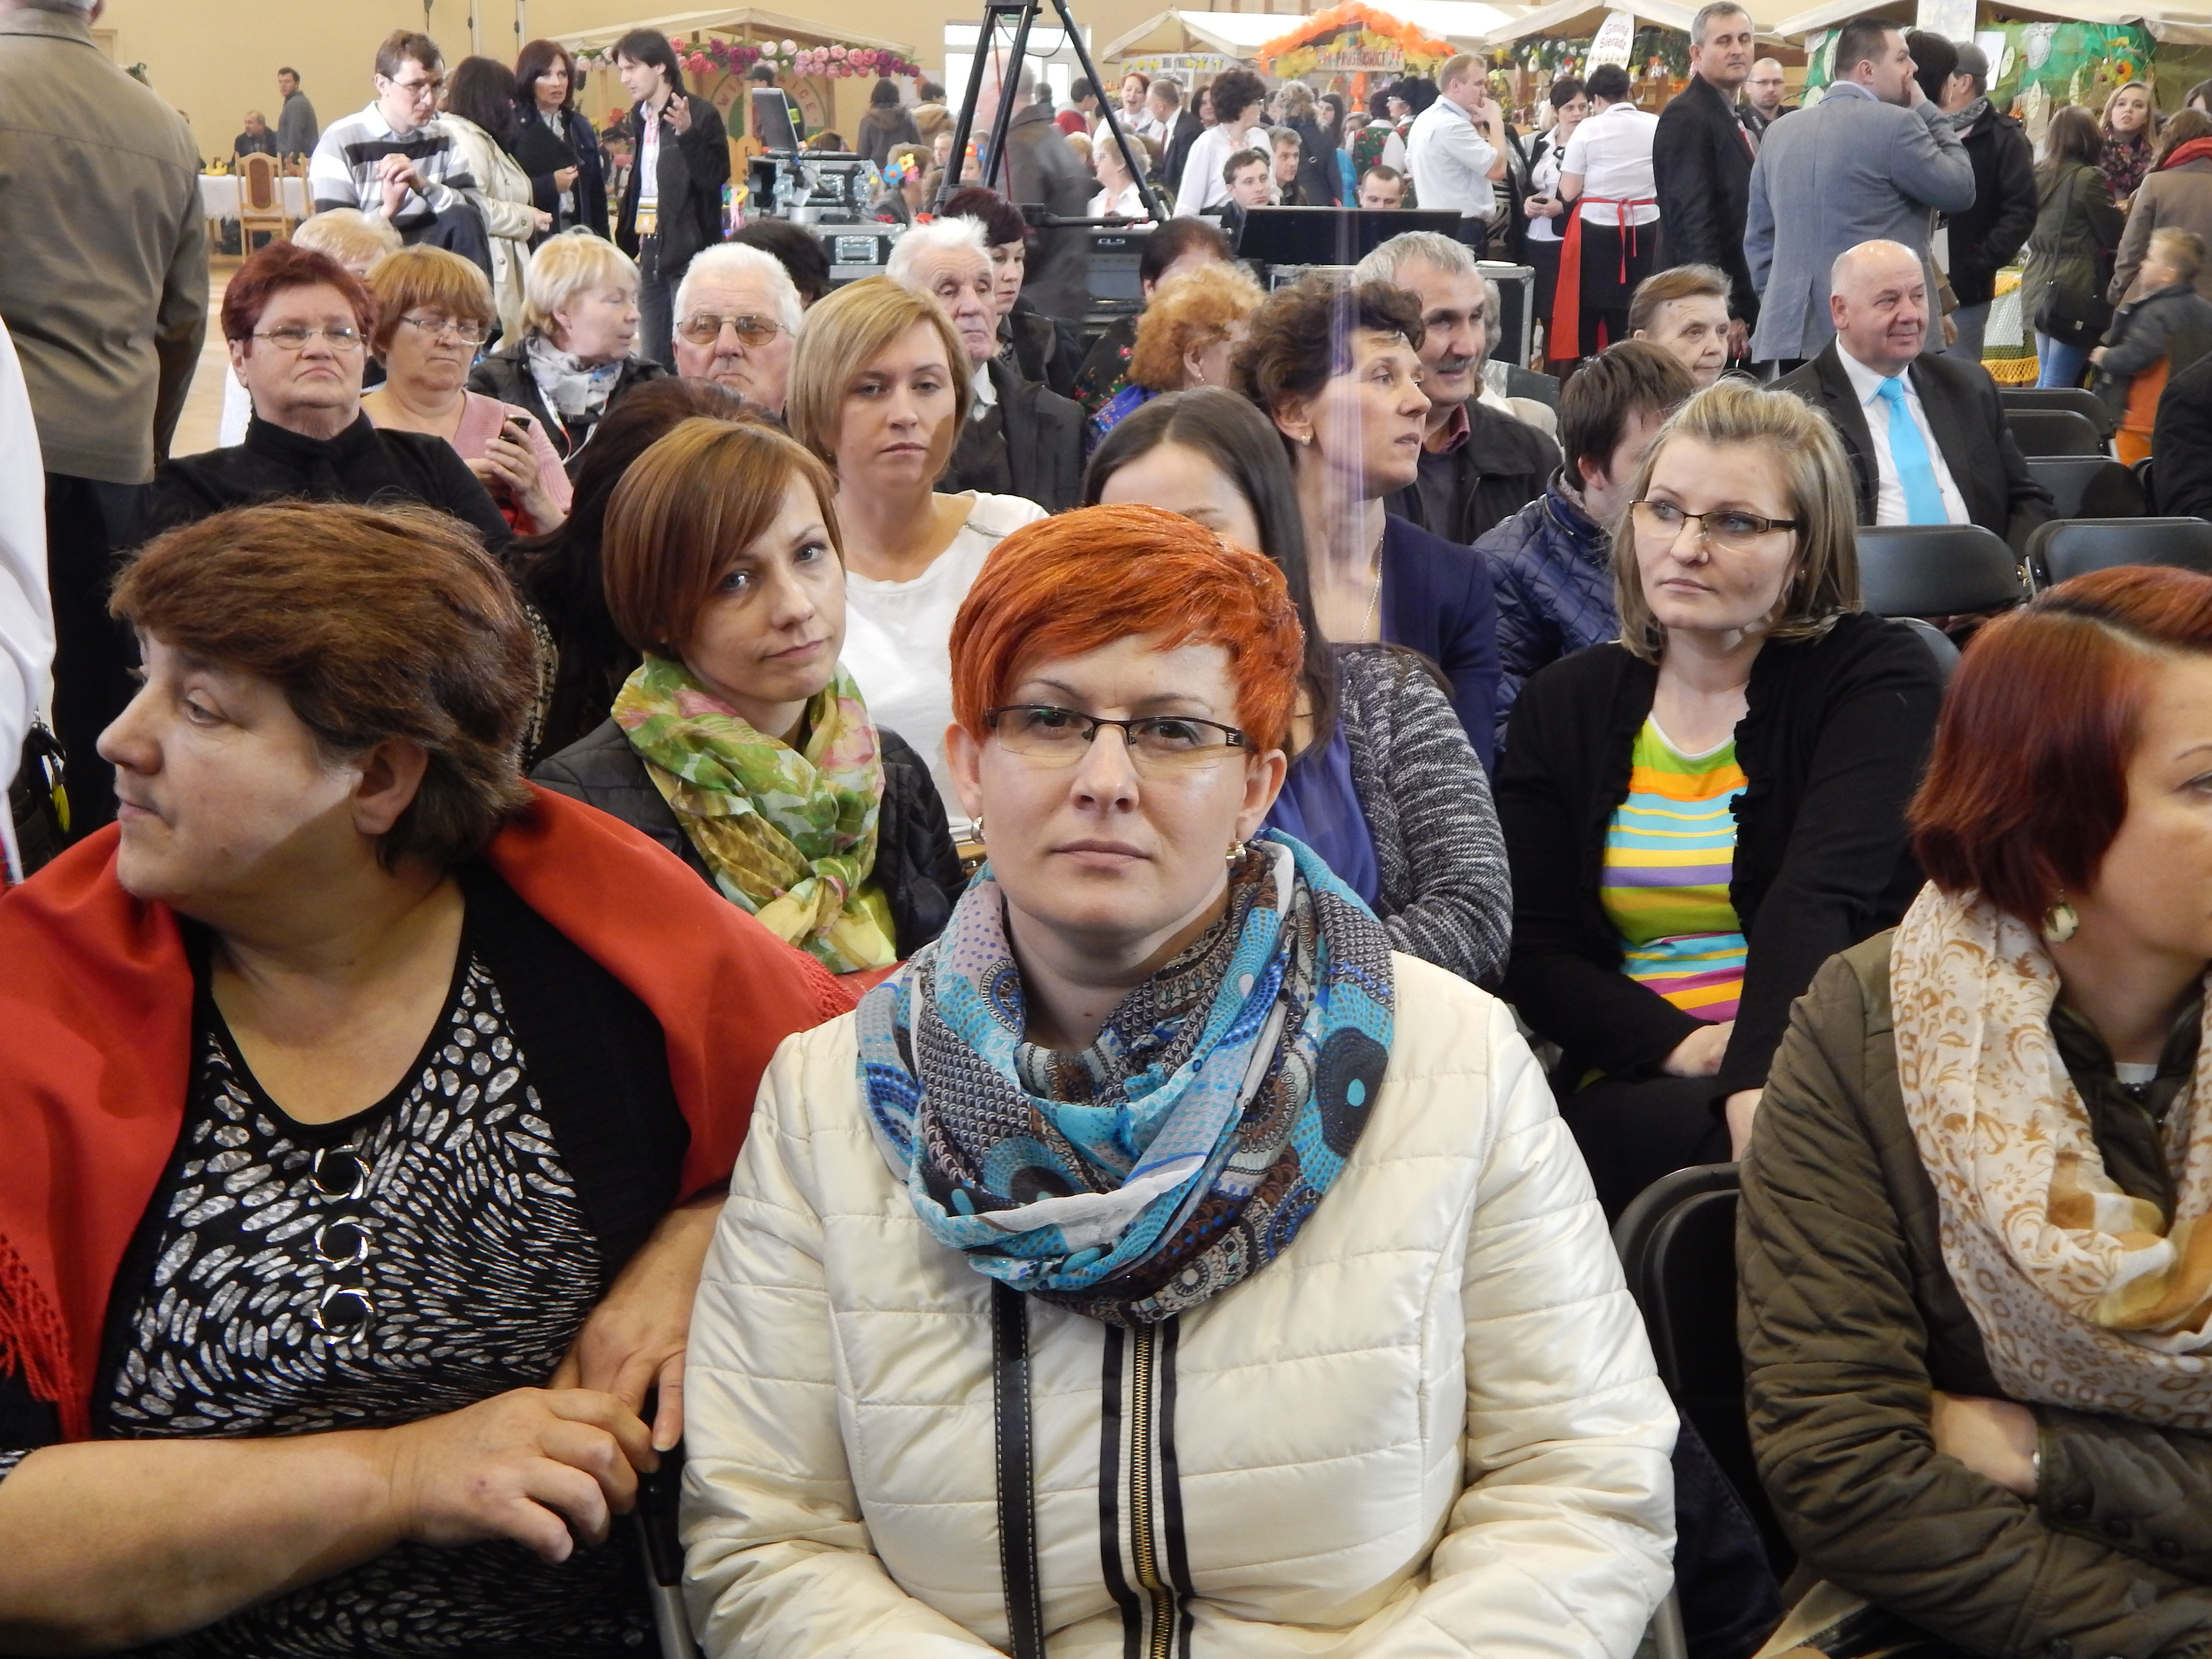 Regionalny Turniej Sołectw Województwa Łódzkiego w Szadku